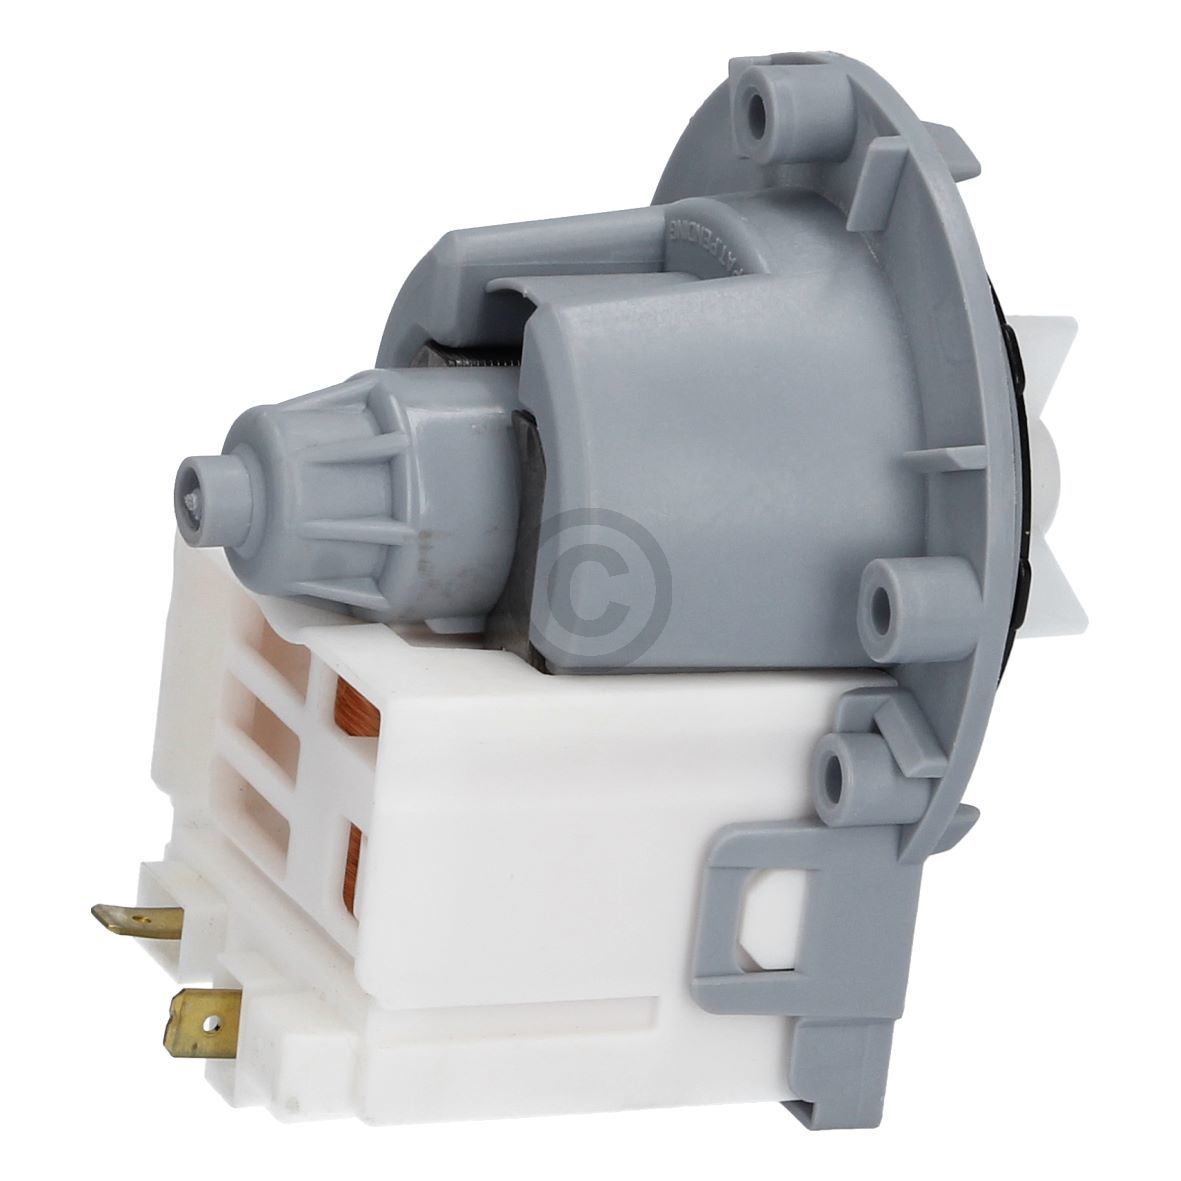 Ablaufpumpe wie INDESIT C00144997 Pumpenmotor Askoll universal kompatibel mit Waschmaschine